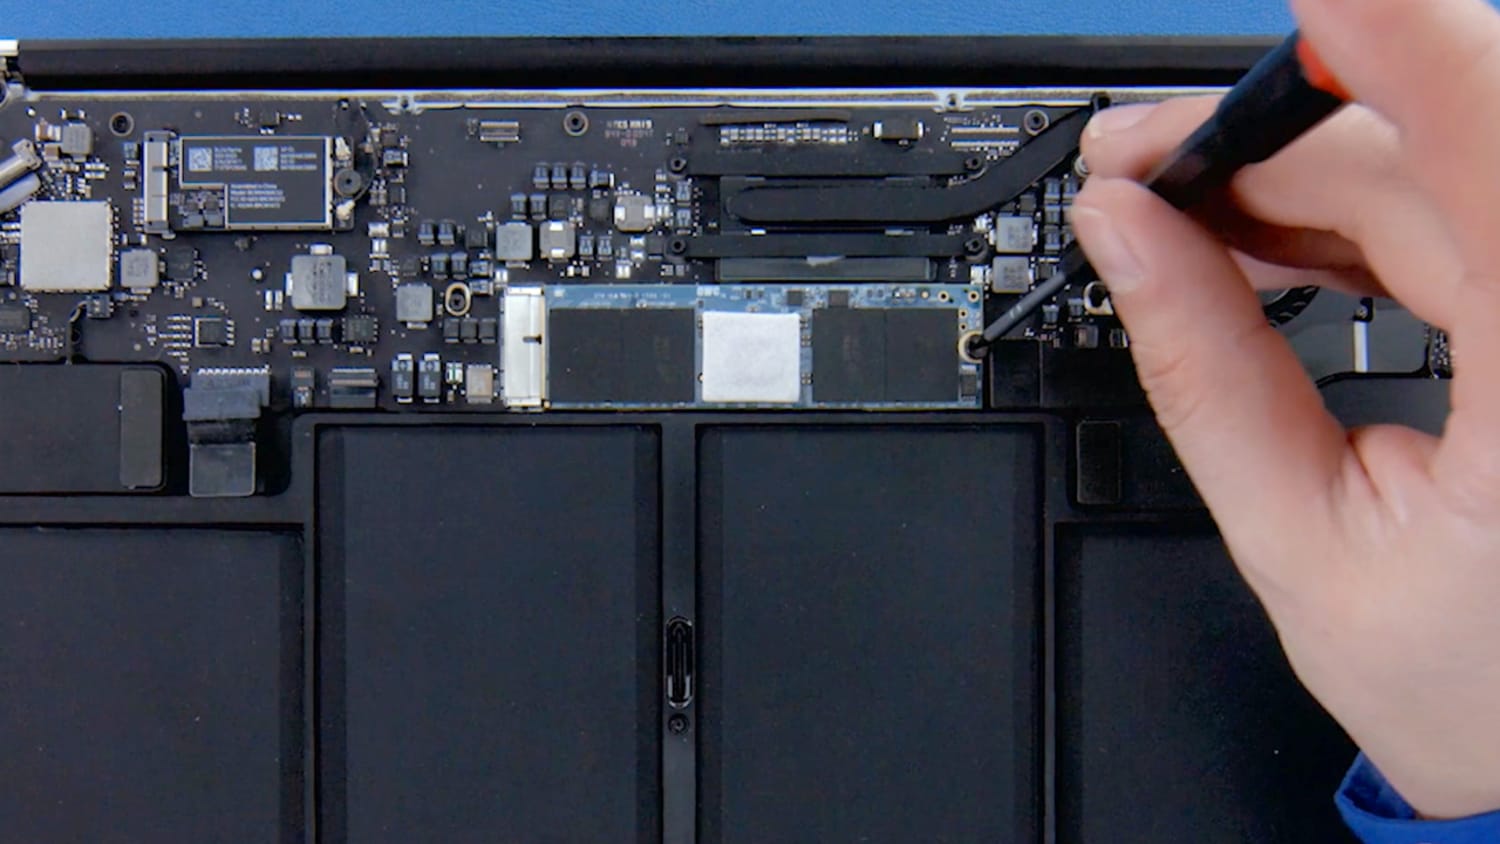 Efterforskning voks Violin SSD Upgrade Kits for MacBook Air 2013 - 2017